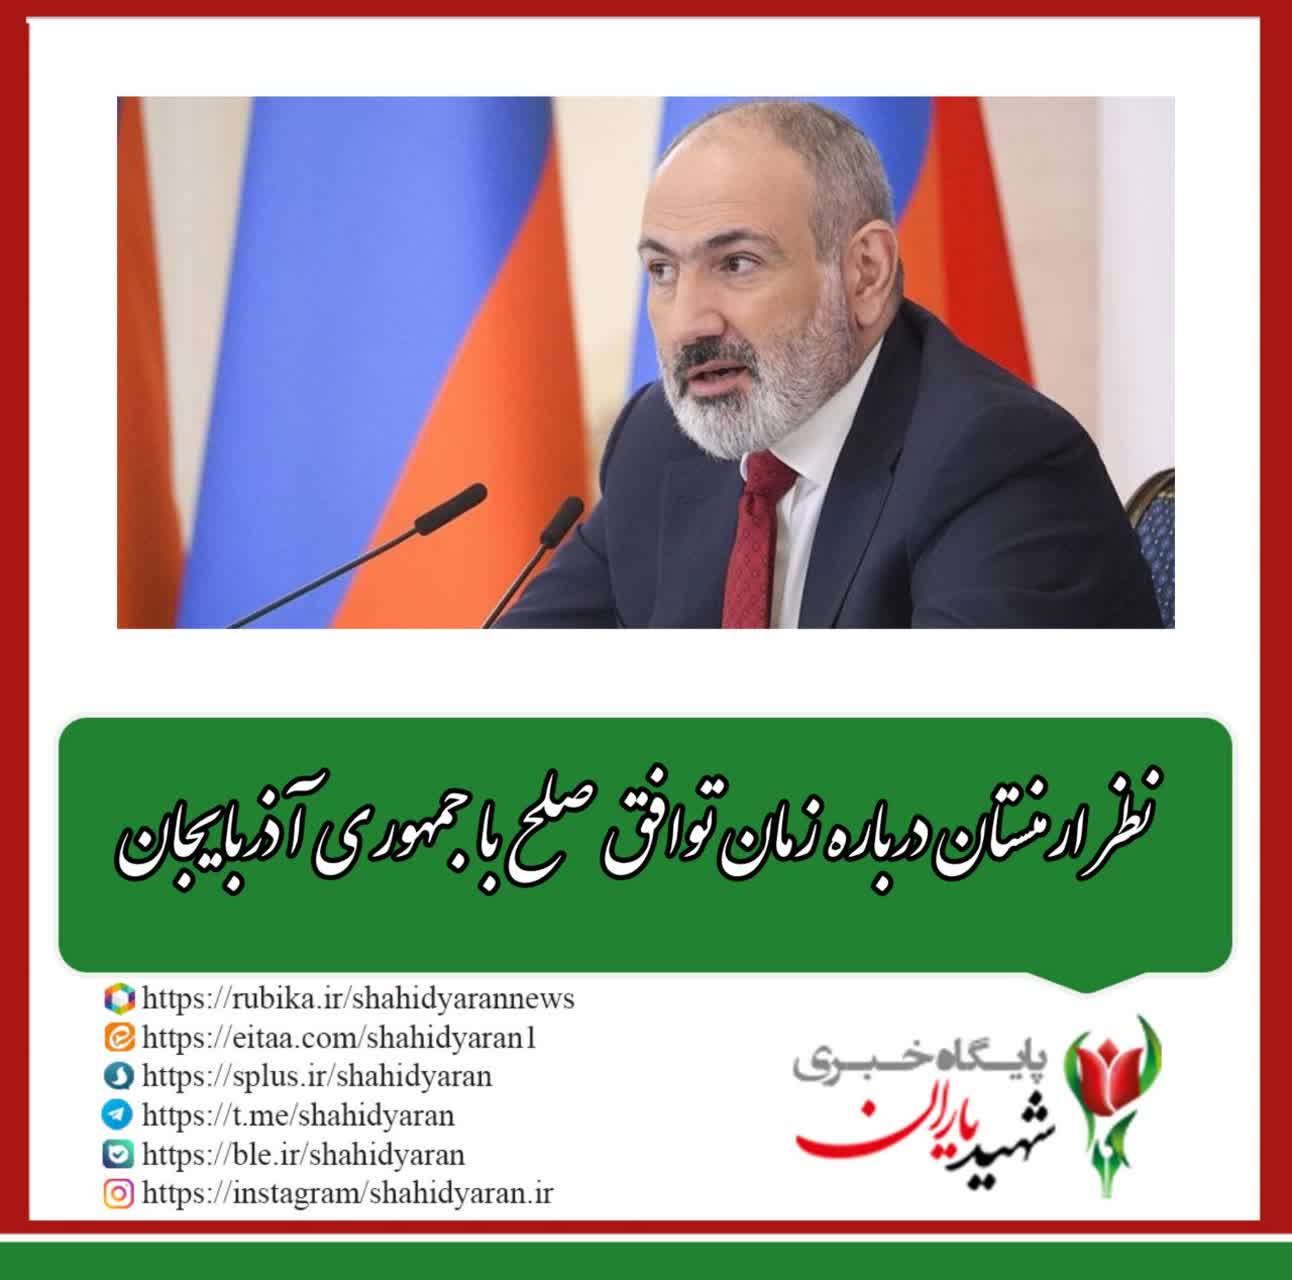 نظر ارمنستان درباره زمان توافق صلح با جمهوری آذربایجان